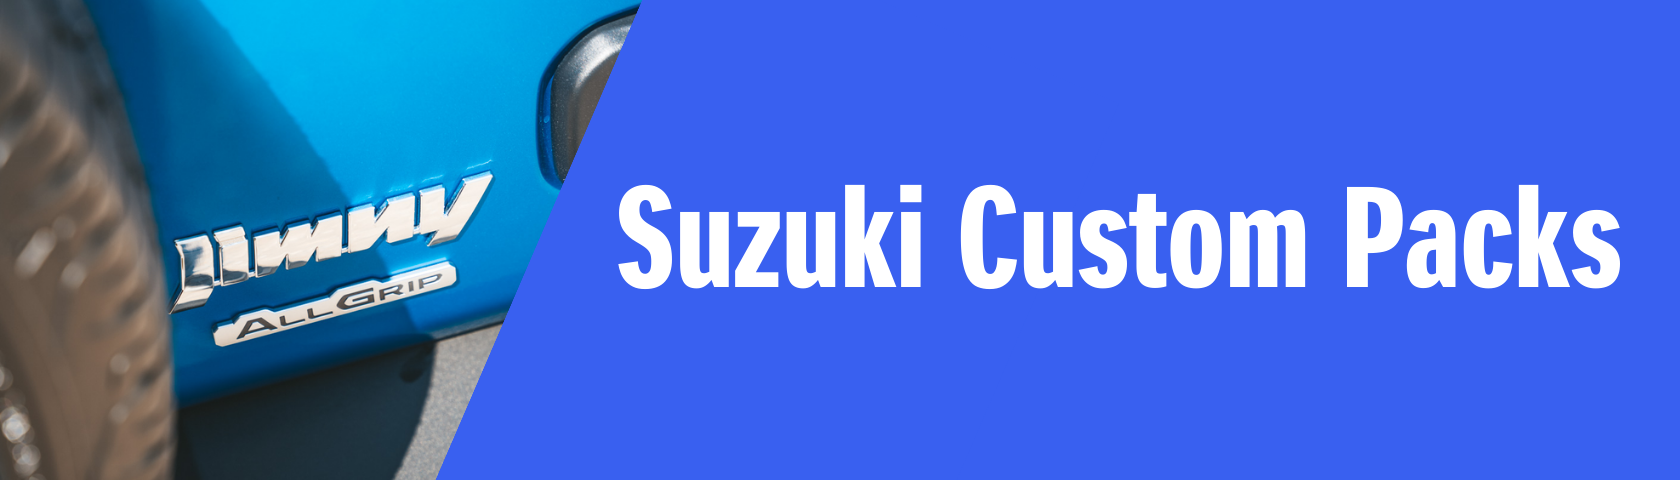 Suzuki Custom Packs